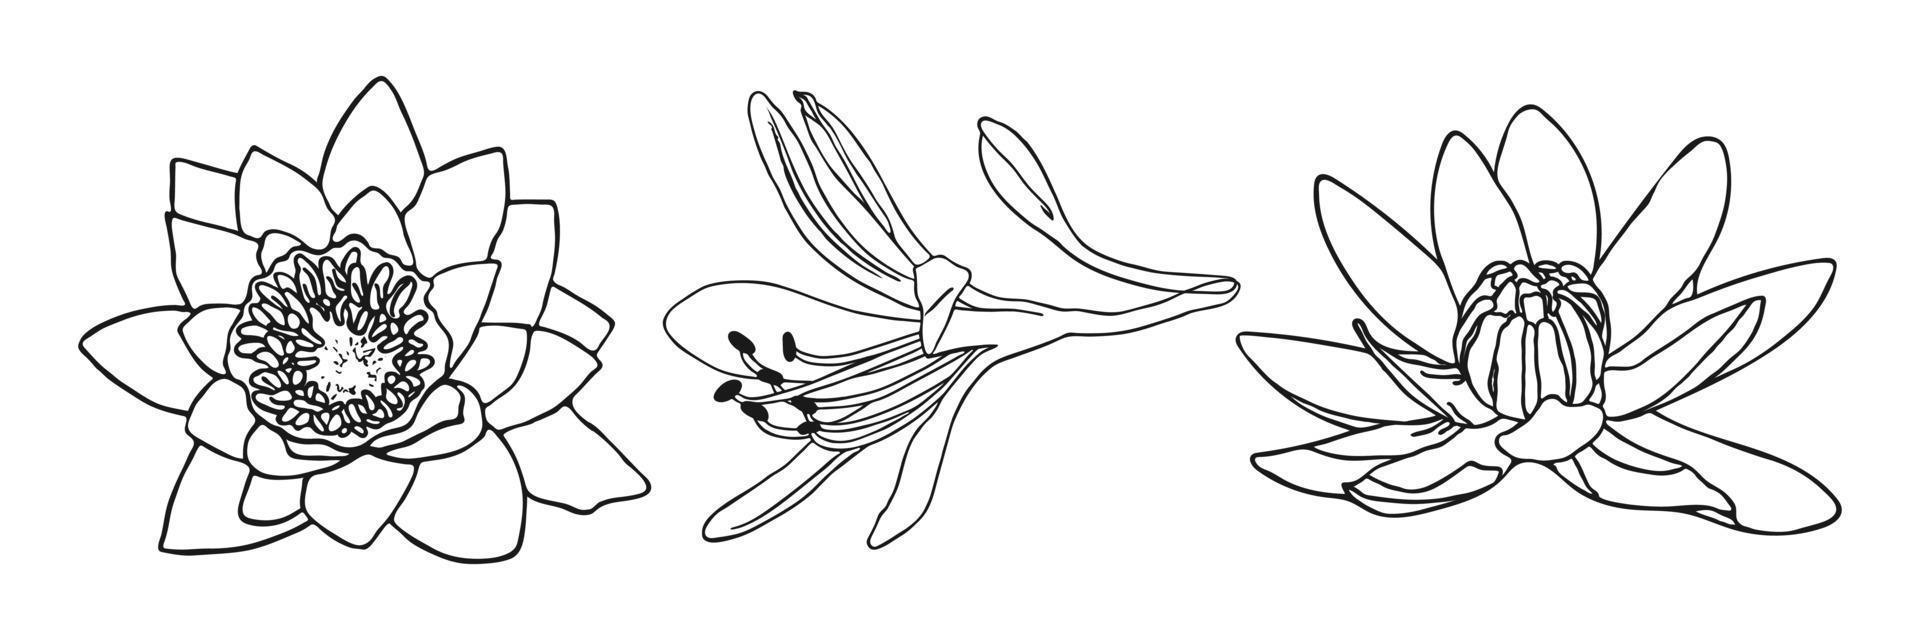 dessin botanique minimal de fleur de lys. ensemble vectoriel d'éléments floraux pour la conception. élément de jeu de doodle. graphique vectoriel d'illustration.